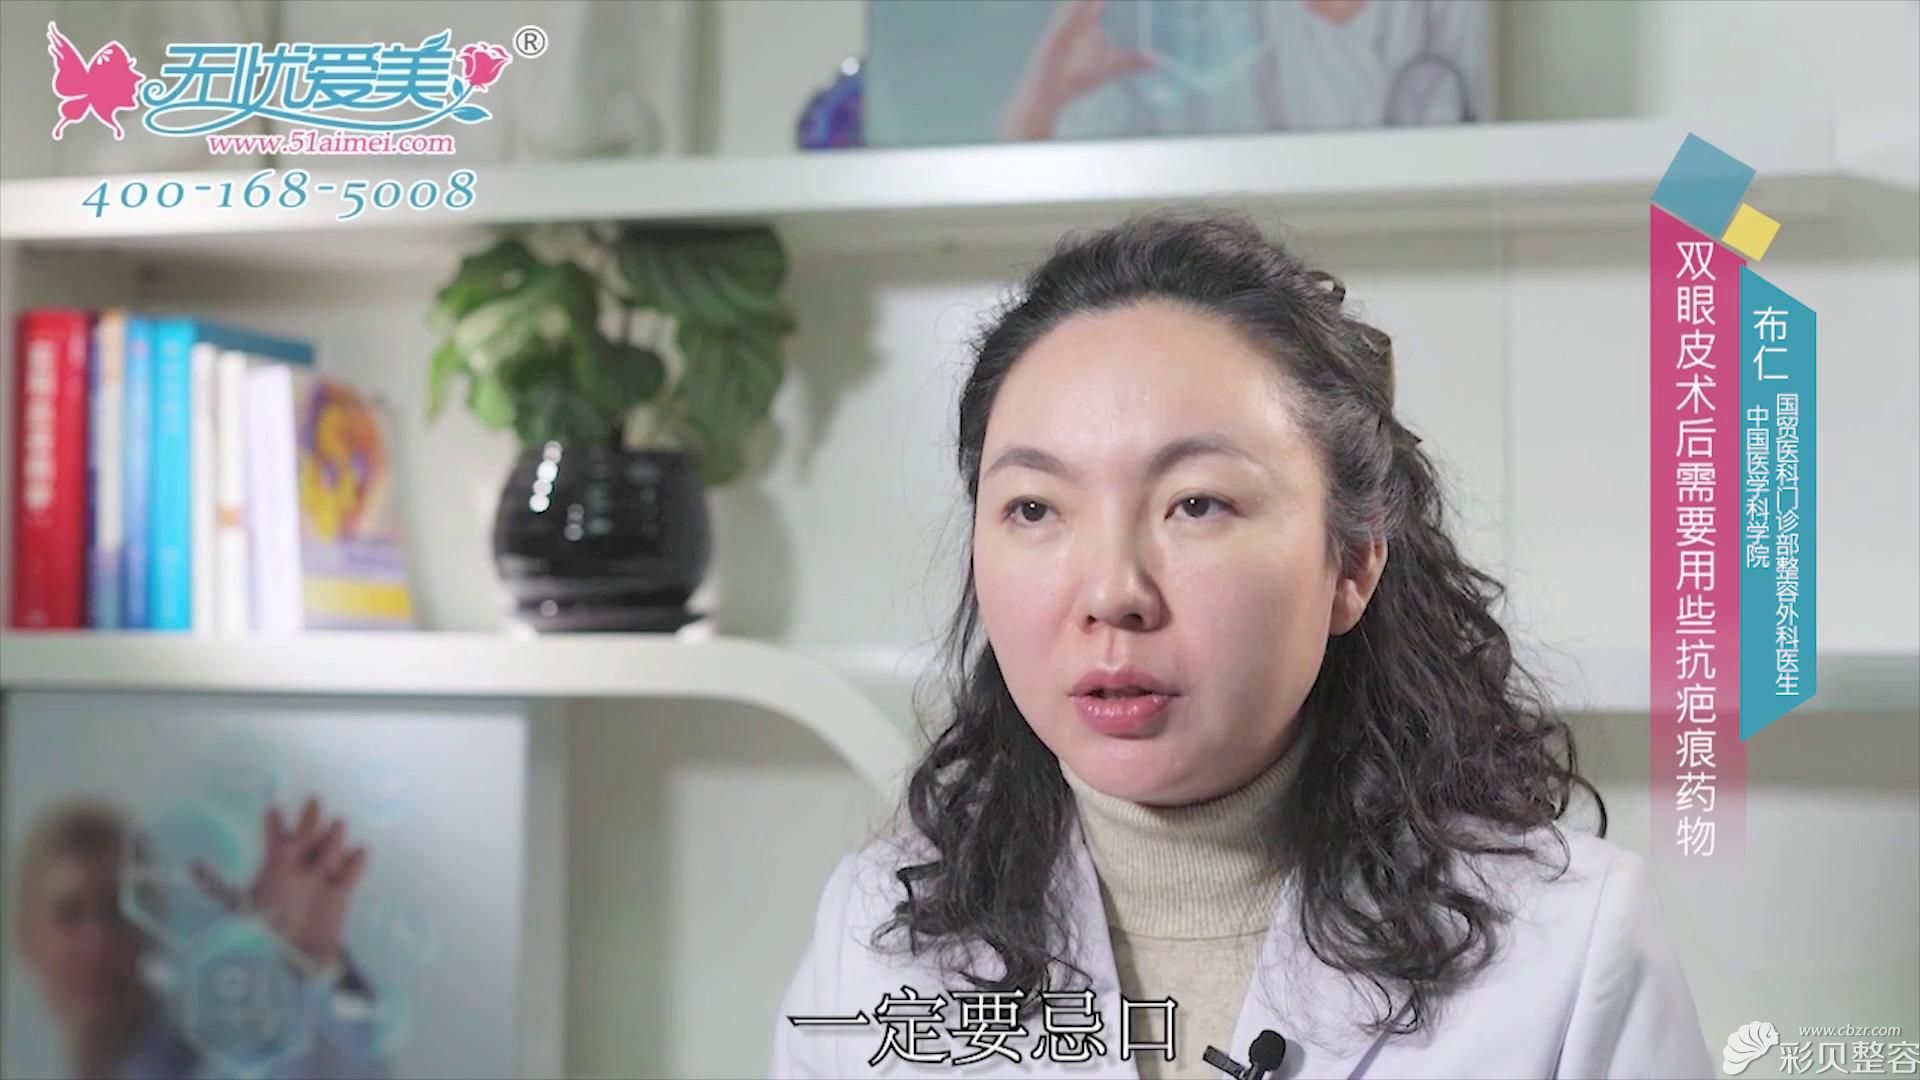 北京八大处布仁视频回答双眼皮术后注意事项